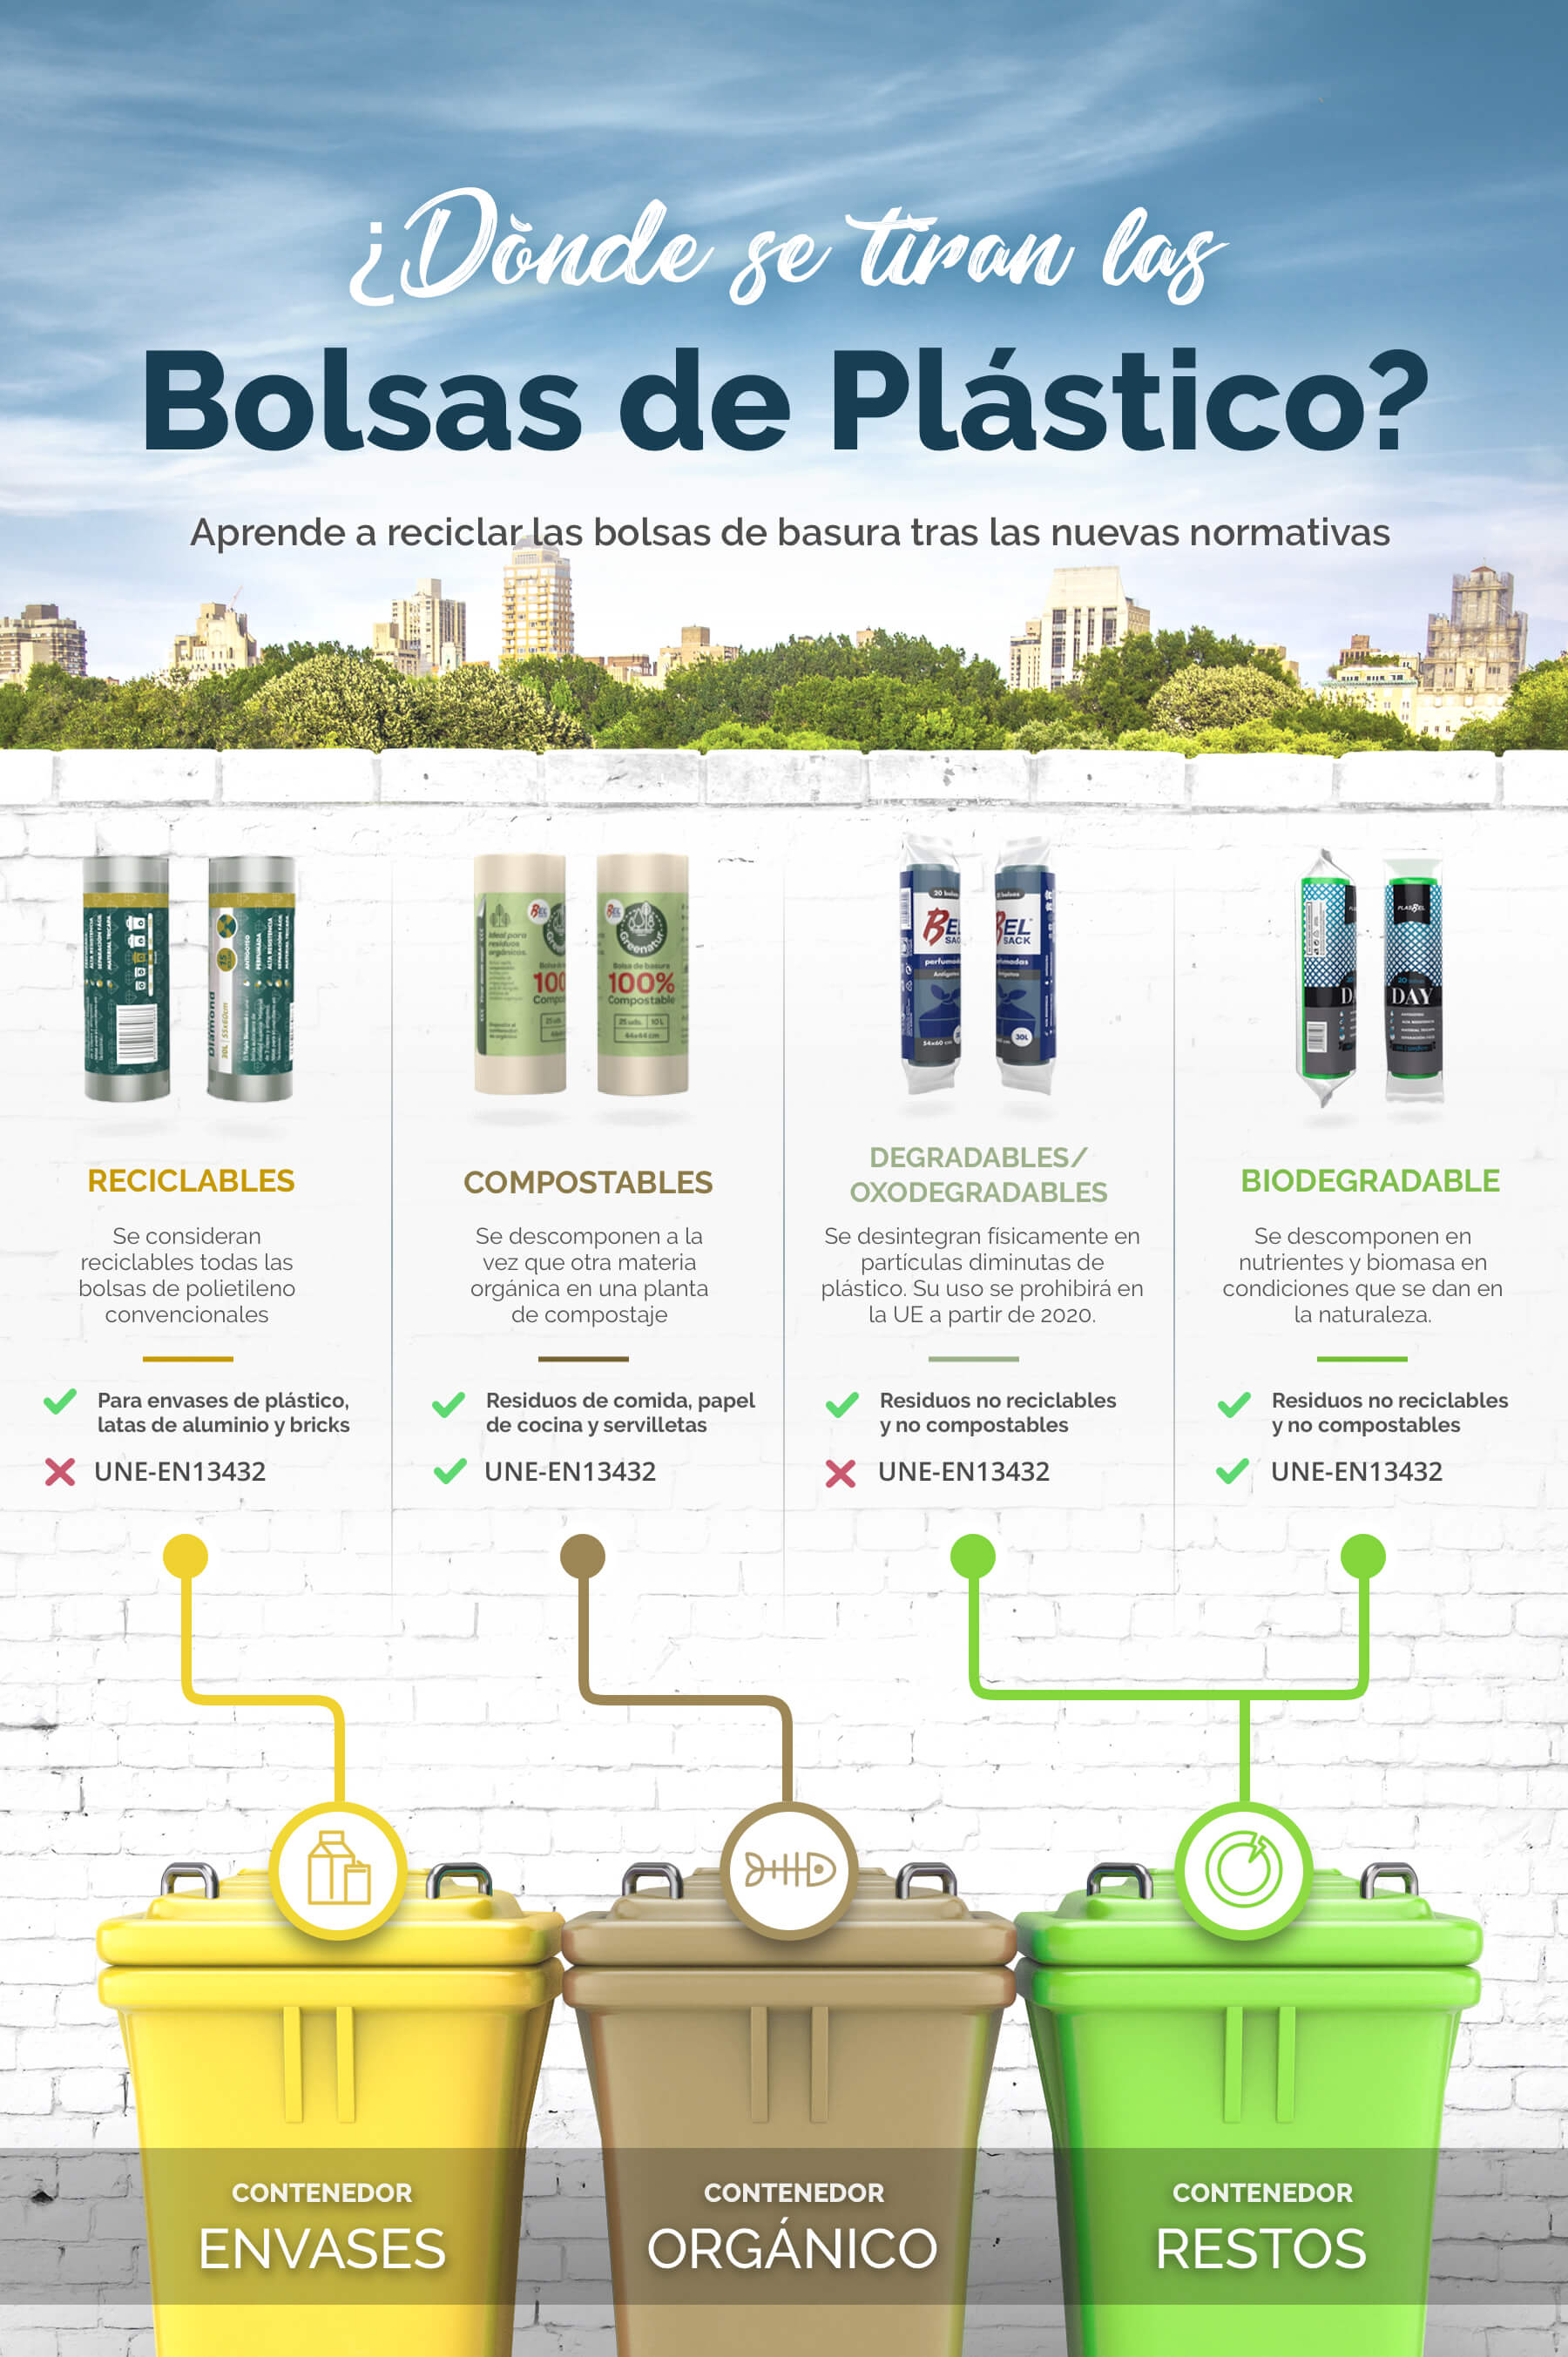 Residuos De Basura Y Bolsas De Plástico En El Contenedor De